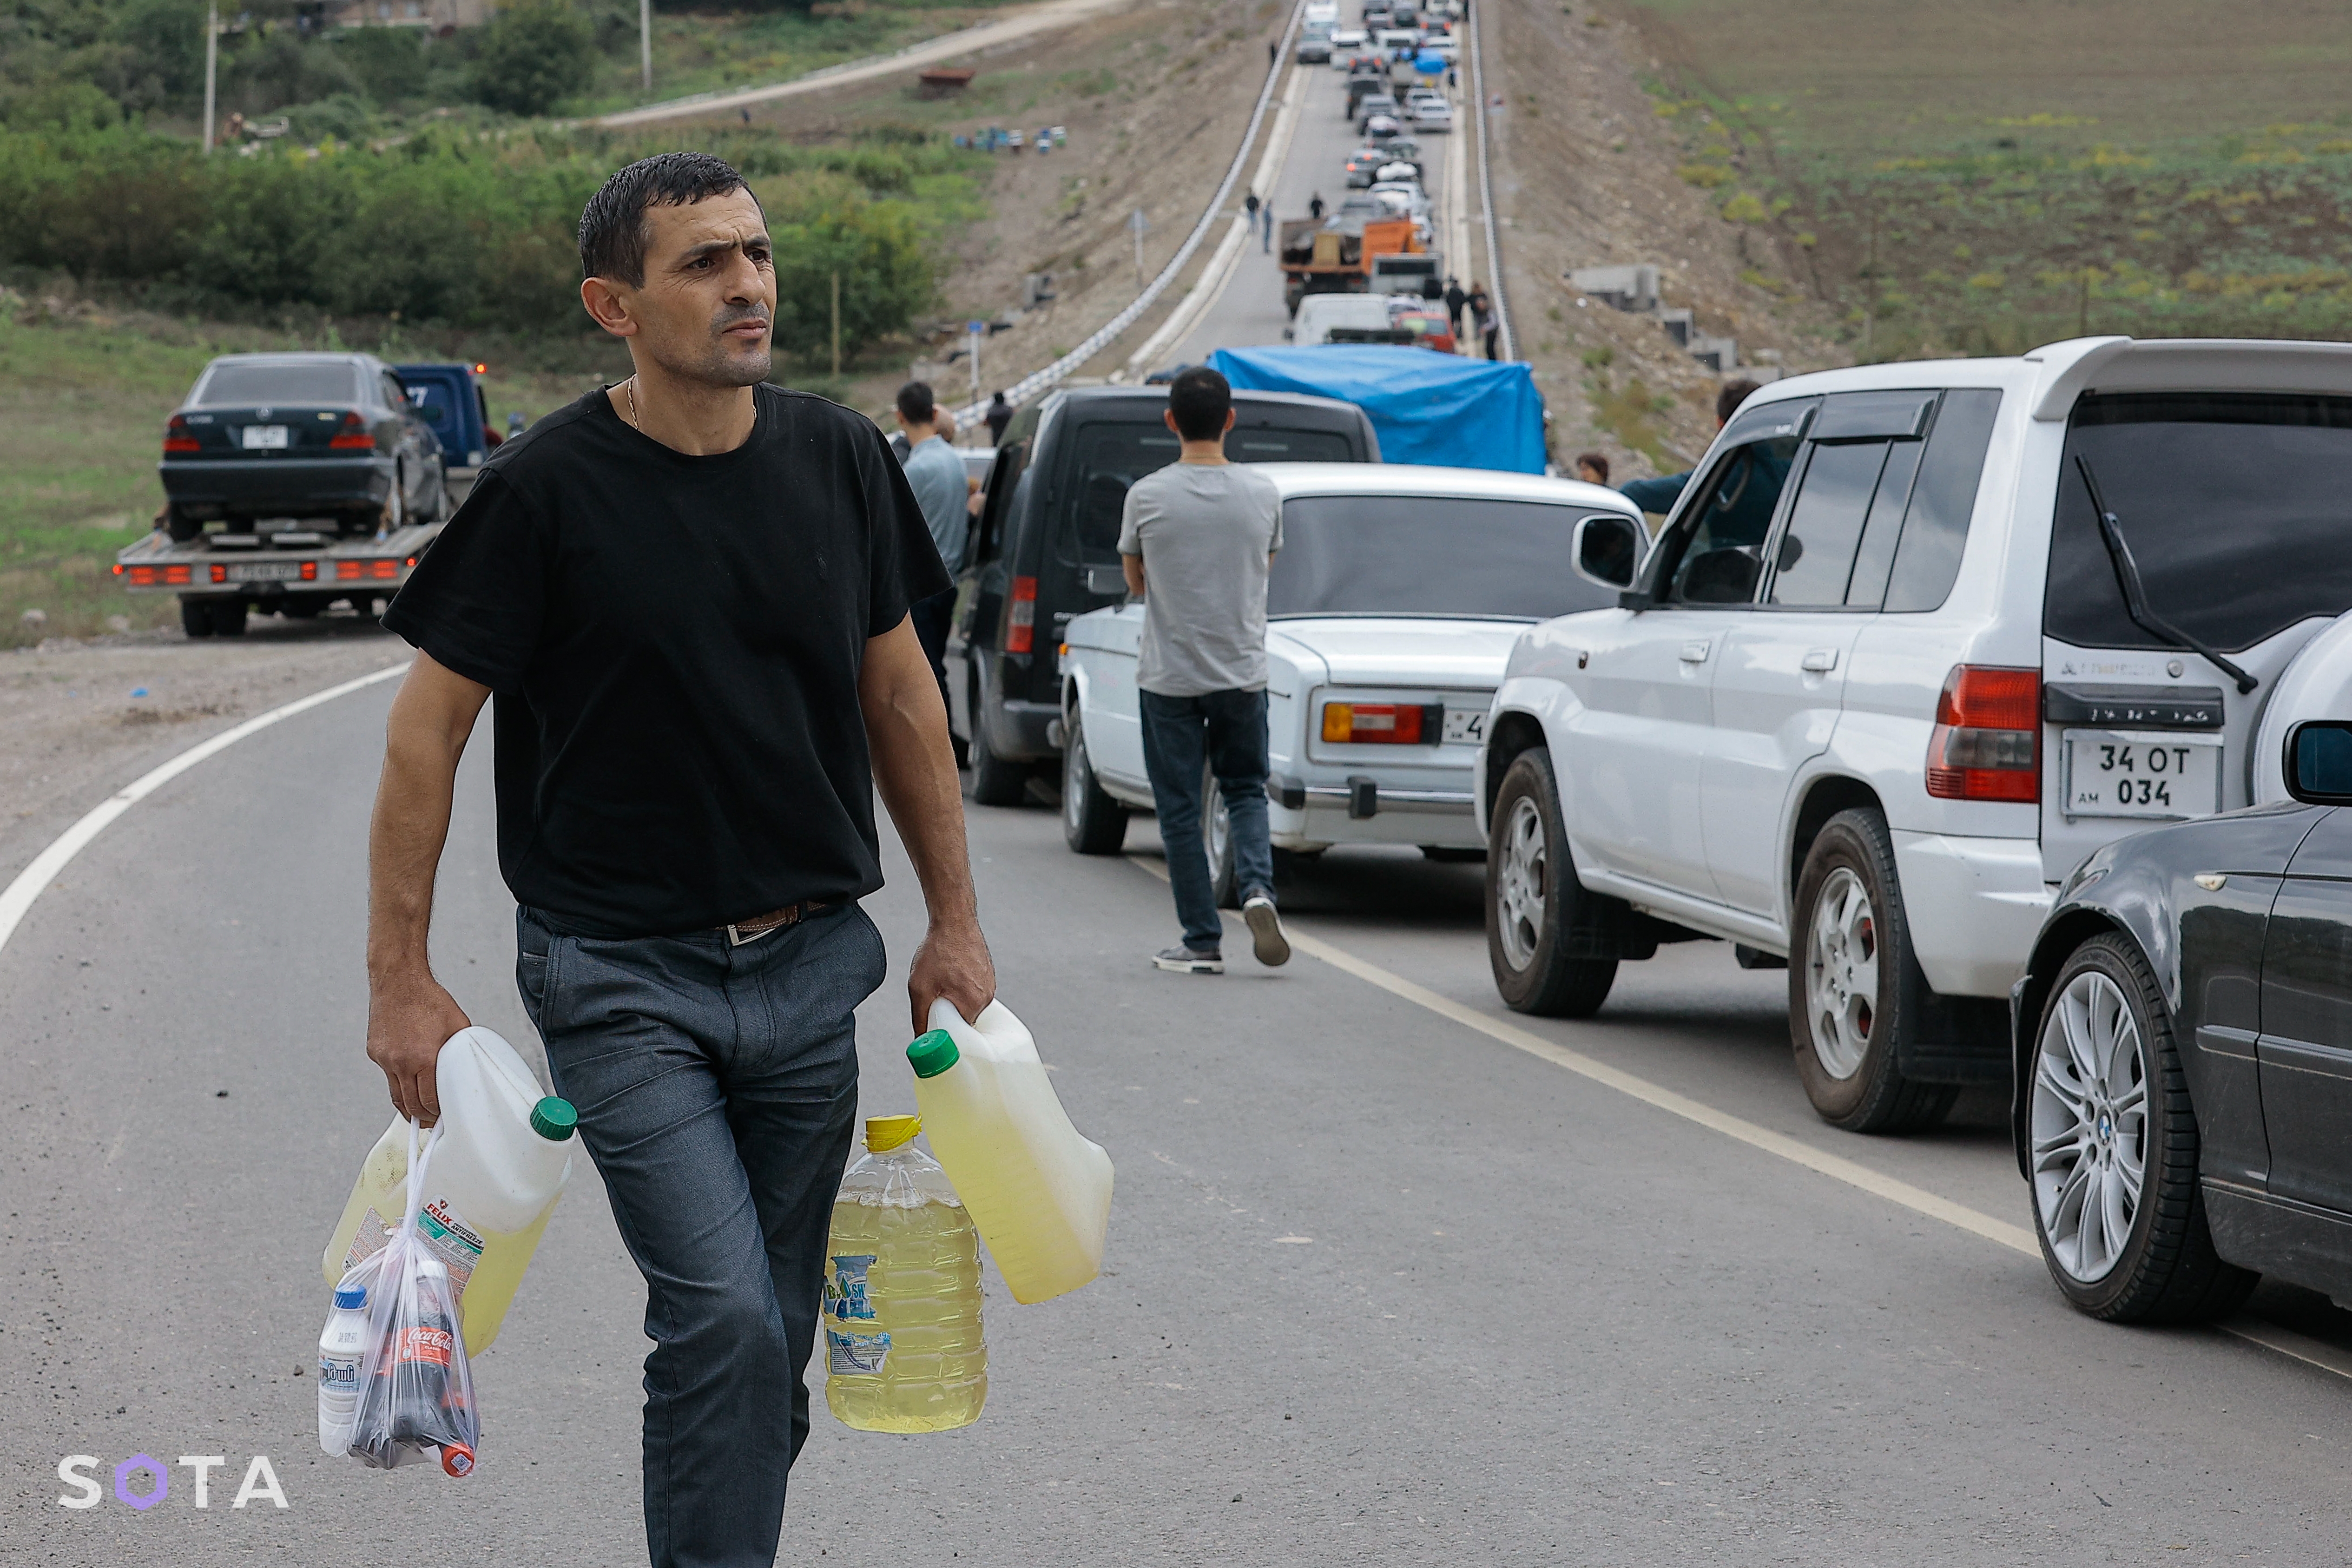 Беженец несет бензин для своего автомобиля возле первого гум лагеря после Лачинского коридора, в селе Корнидзор
Алексей Молчалин / SOTA